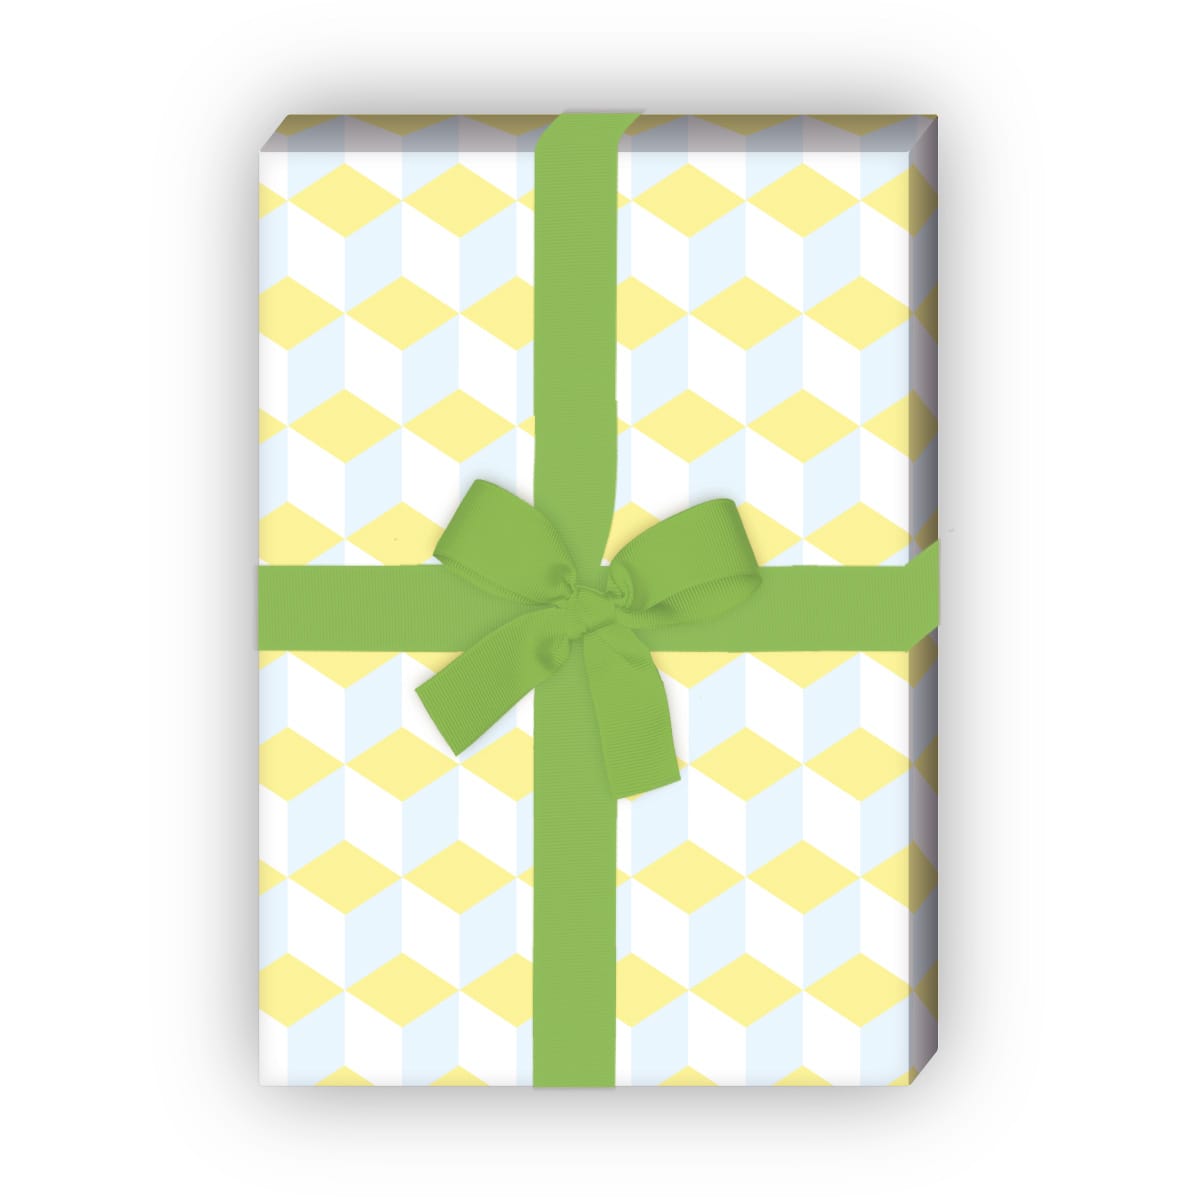 Kartenkaufrausch: Grafisches Designer Geschenkpapier im aus unserer Geburtstags Papeterie in gelb